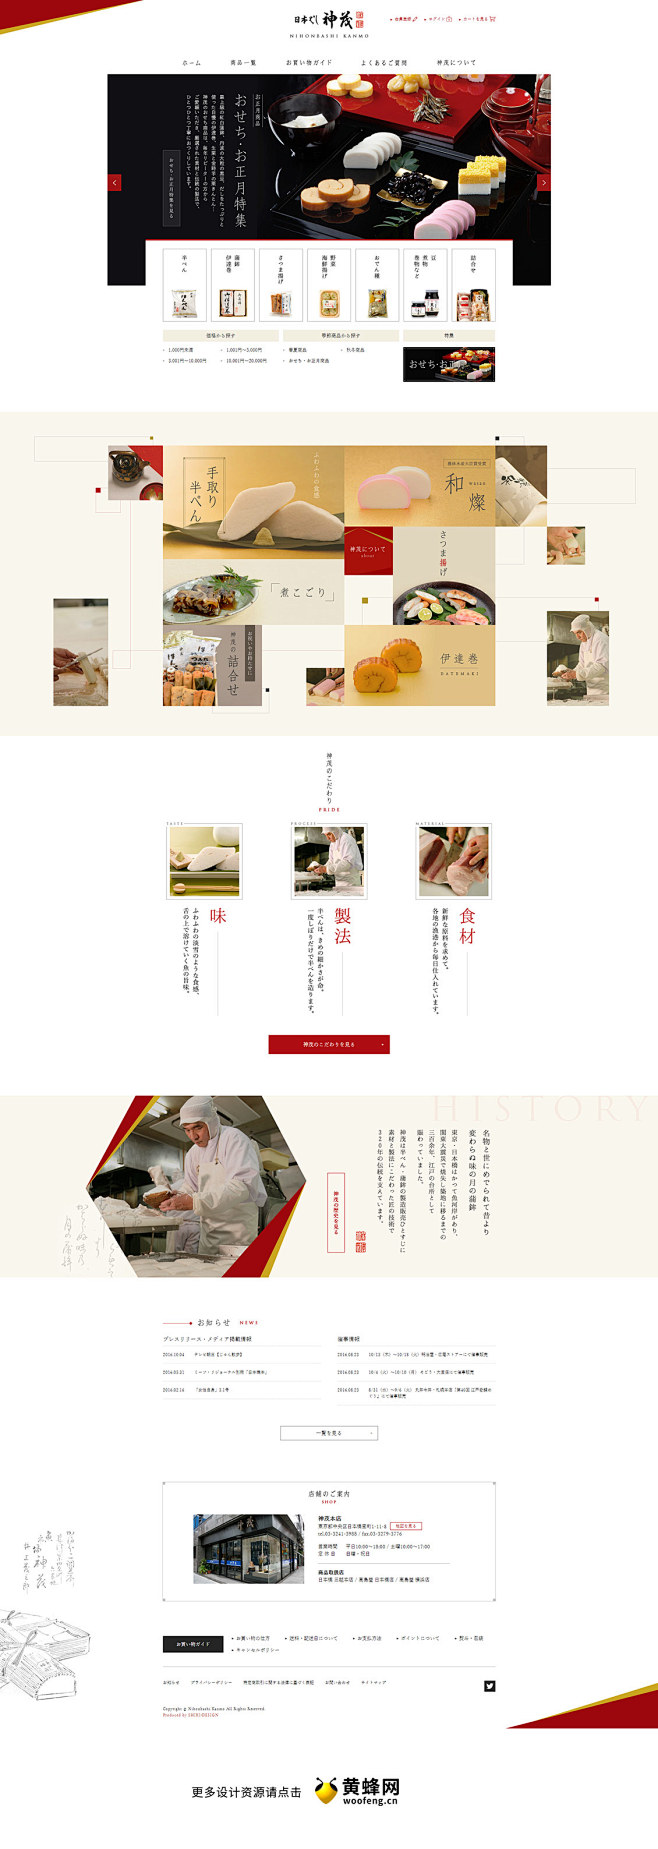 日本橋神茂食品美食网站 更多设计资源尽在...